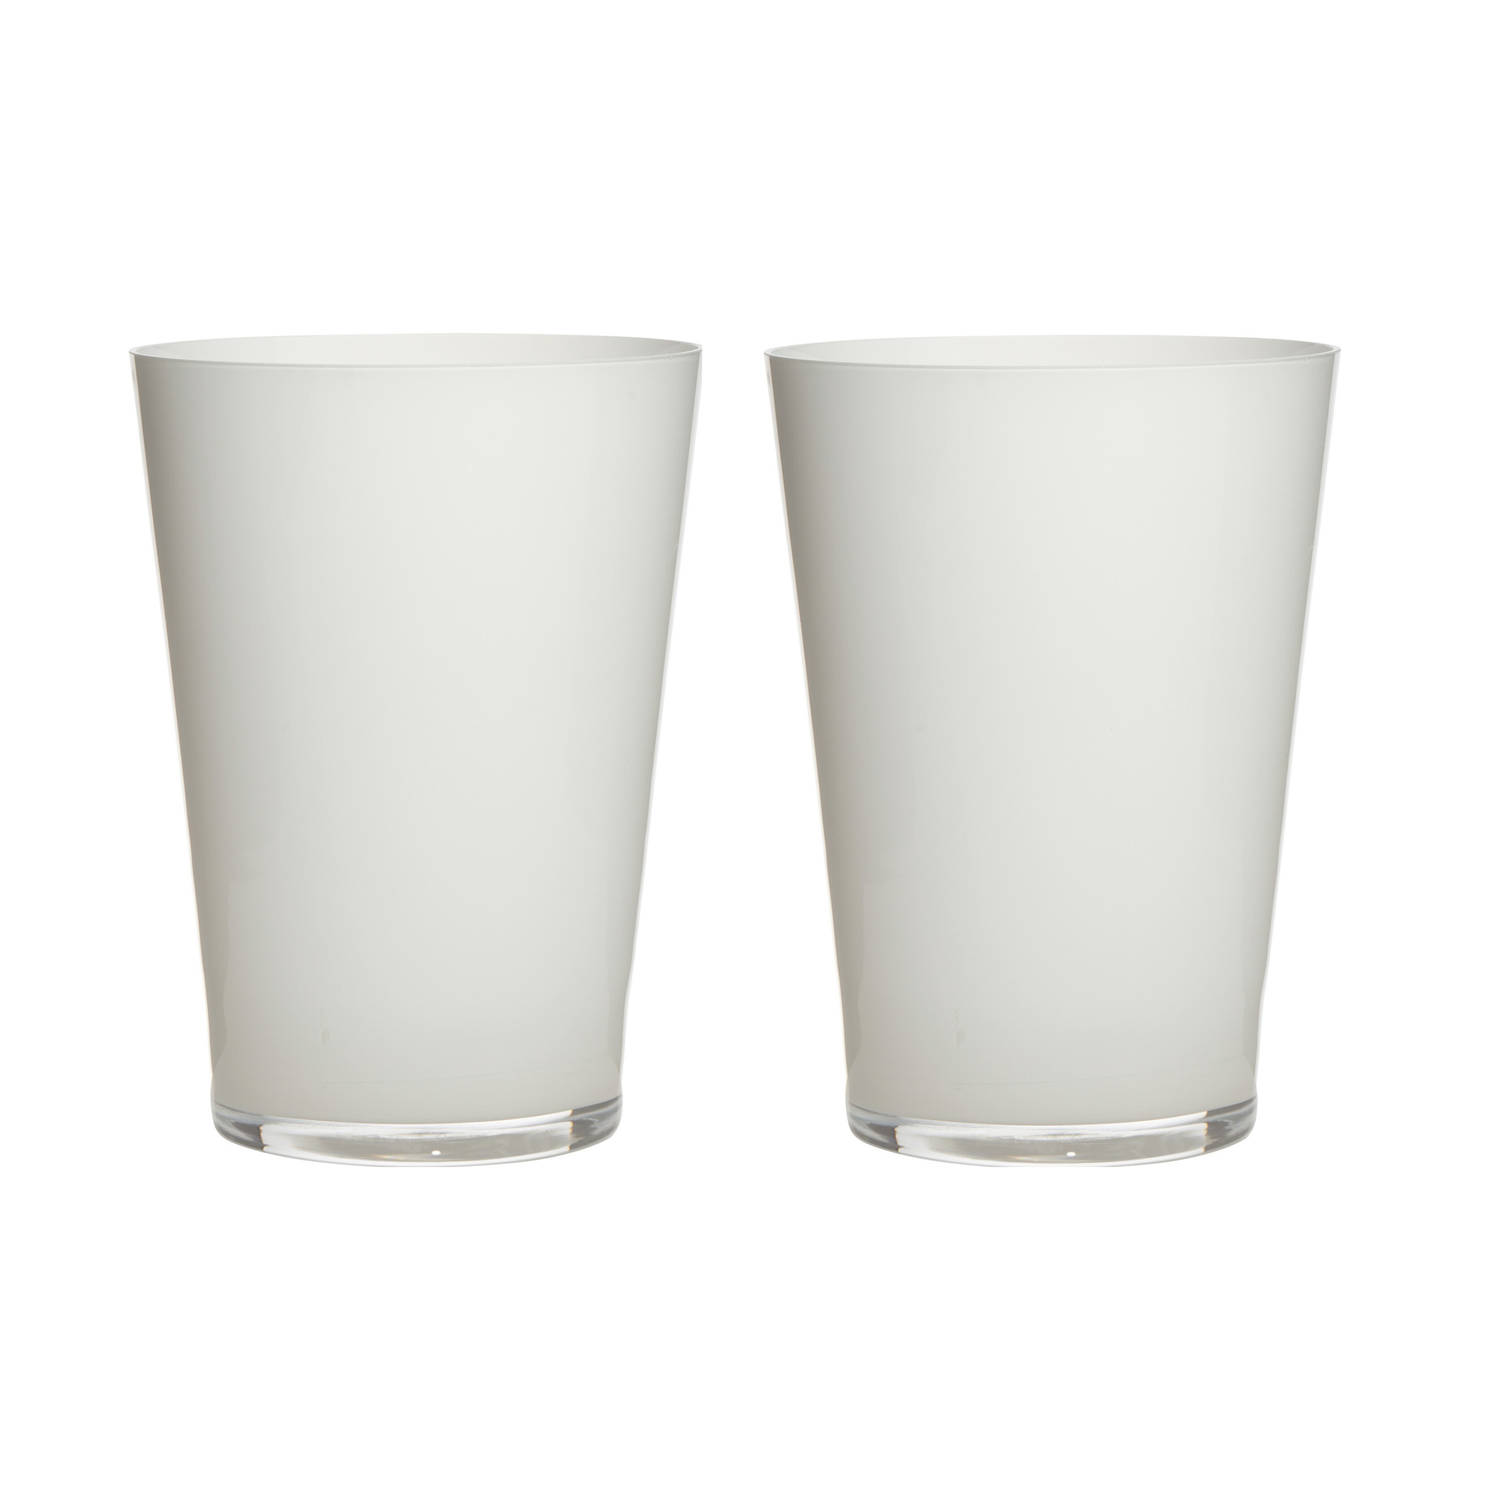 2x Stuks Luxe Witte Conische Stijlvolle Vaas-vazen Van Glas 30 X 22 Cm Bloemen-boeketten Vaas Voor B